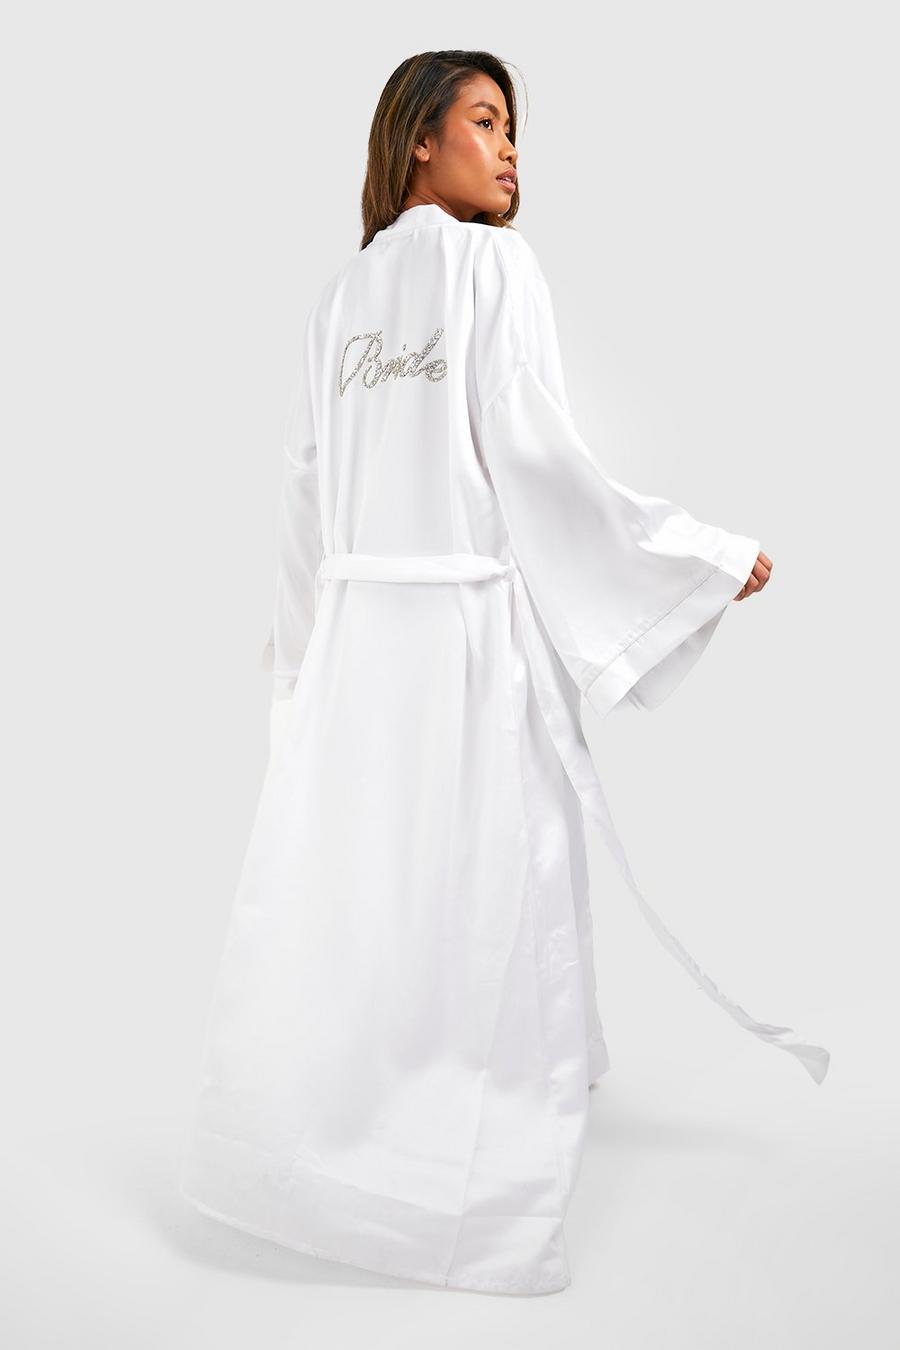 Vestaglia maxi in raso decorata con scritta Bride, White